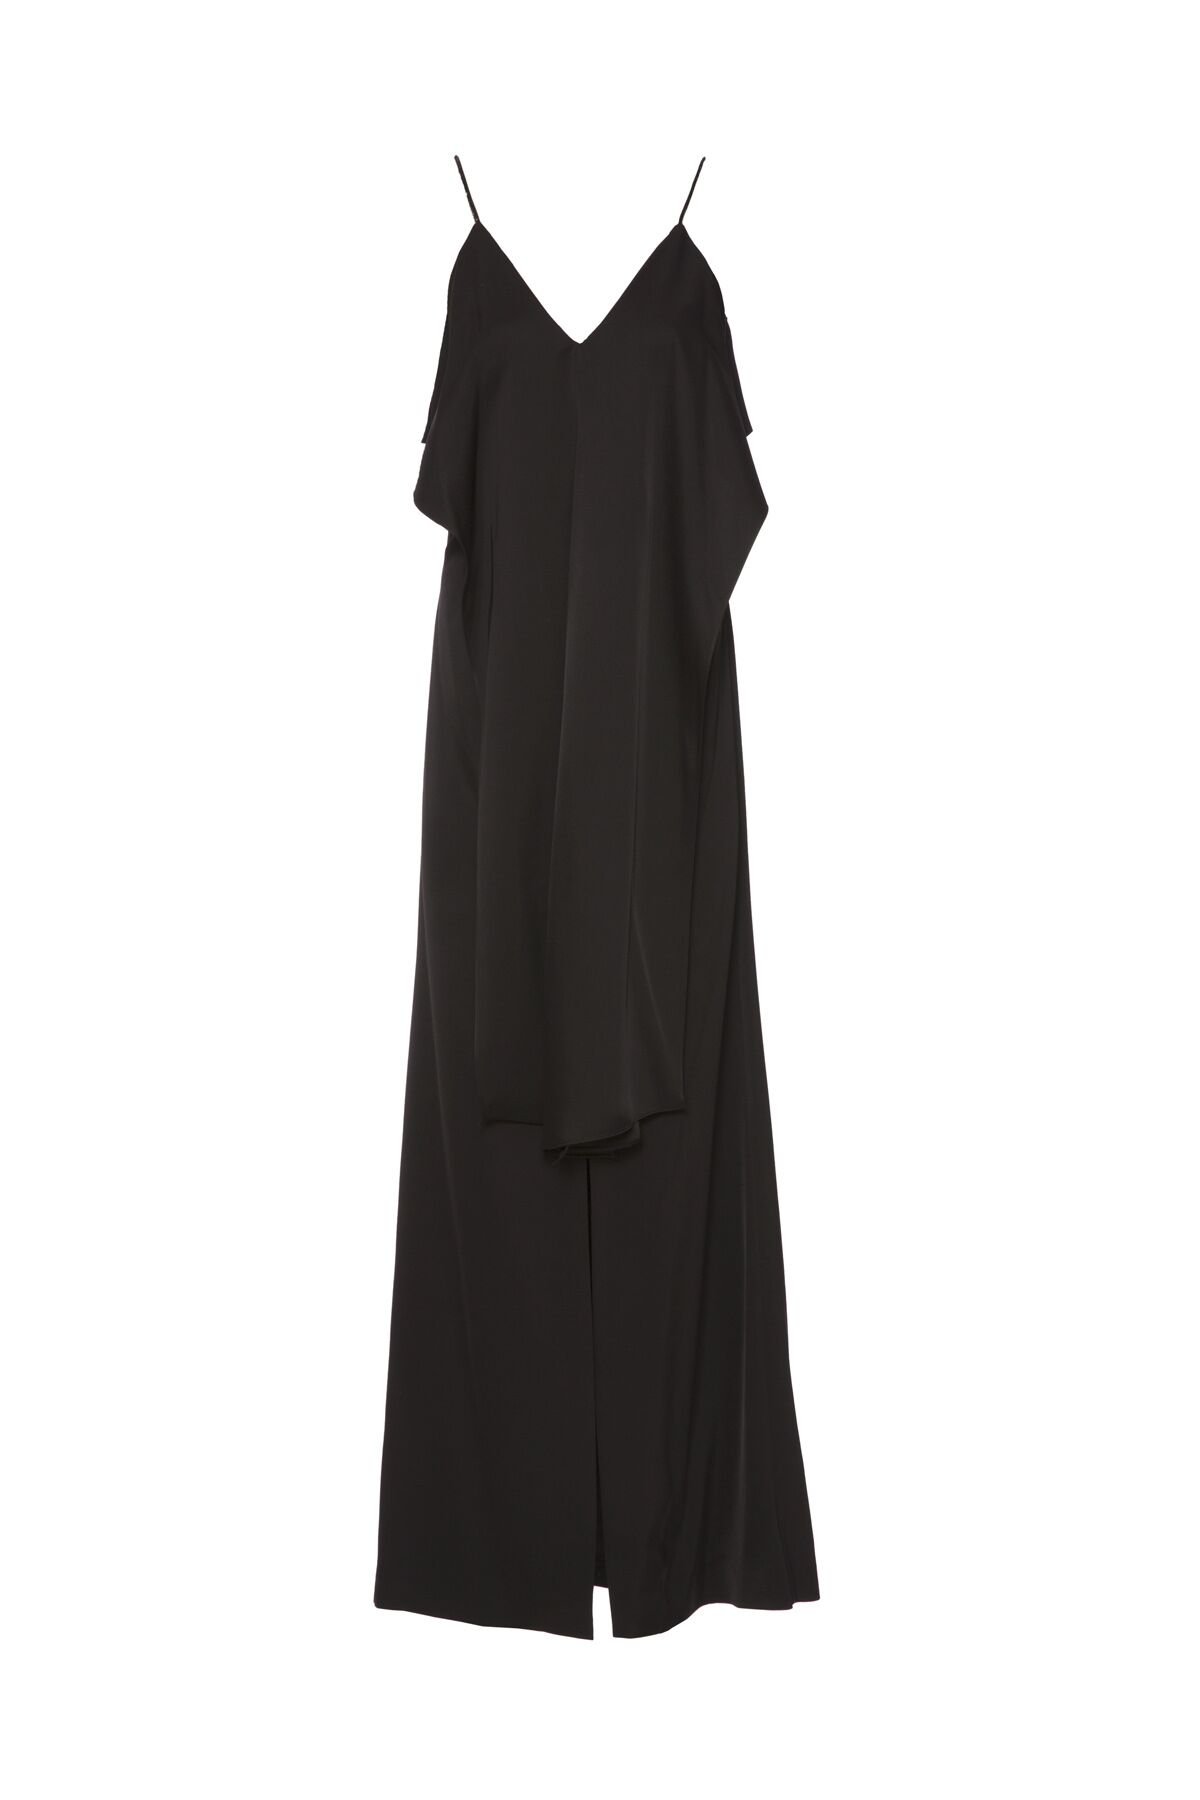 Slit Detailed Matte Satin Strap Black Evening Dress